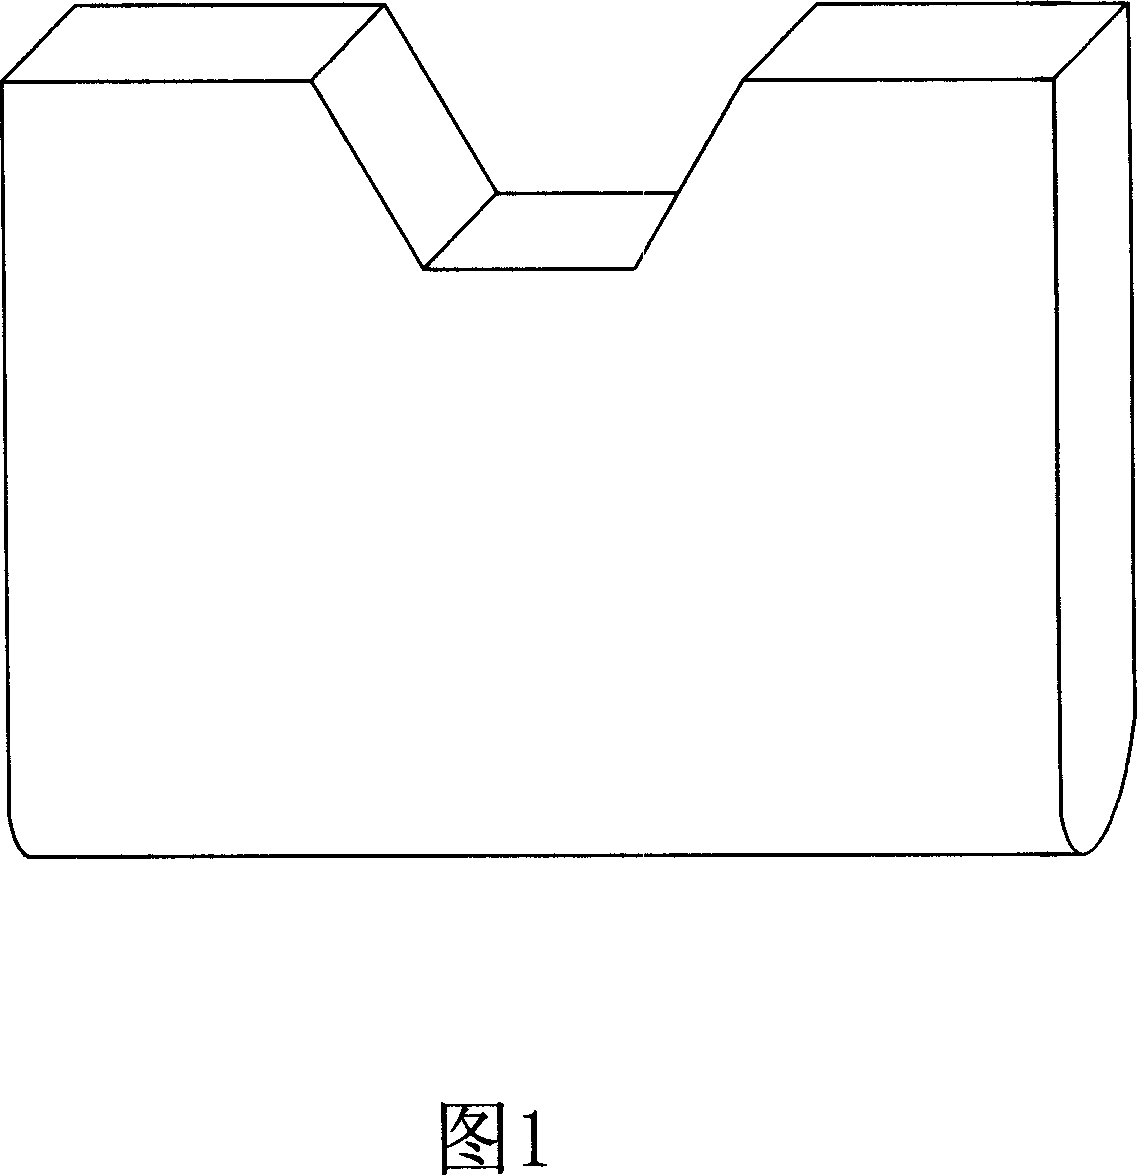 Method for manufacturing slip-sheet of compressor